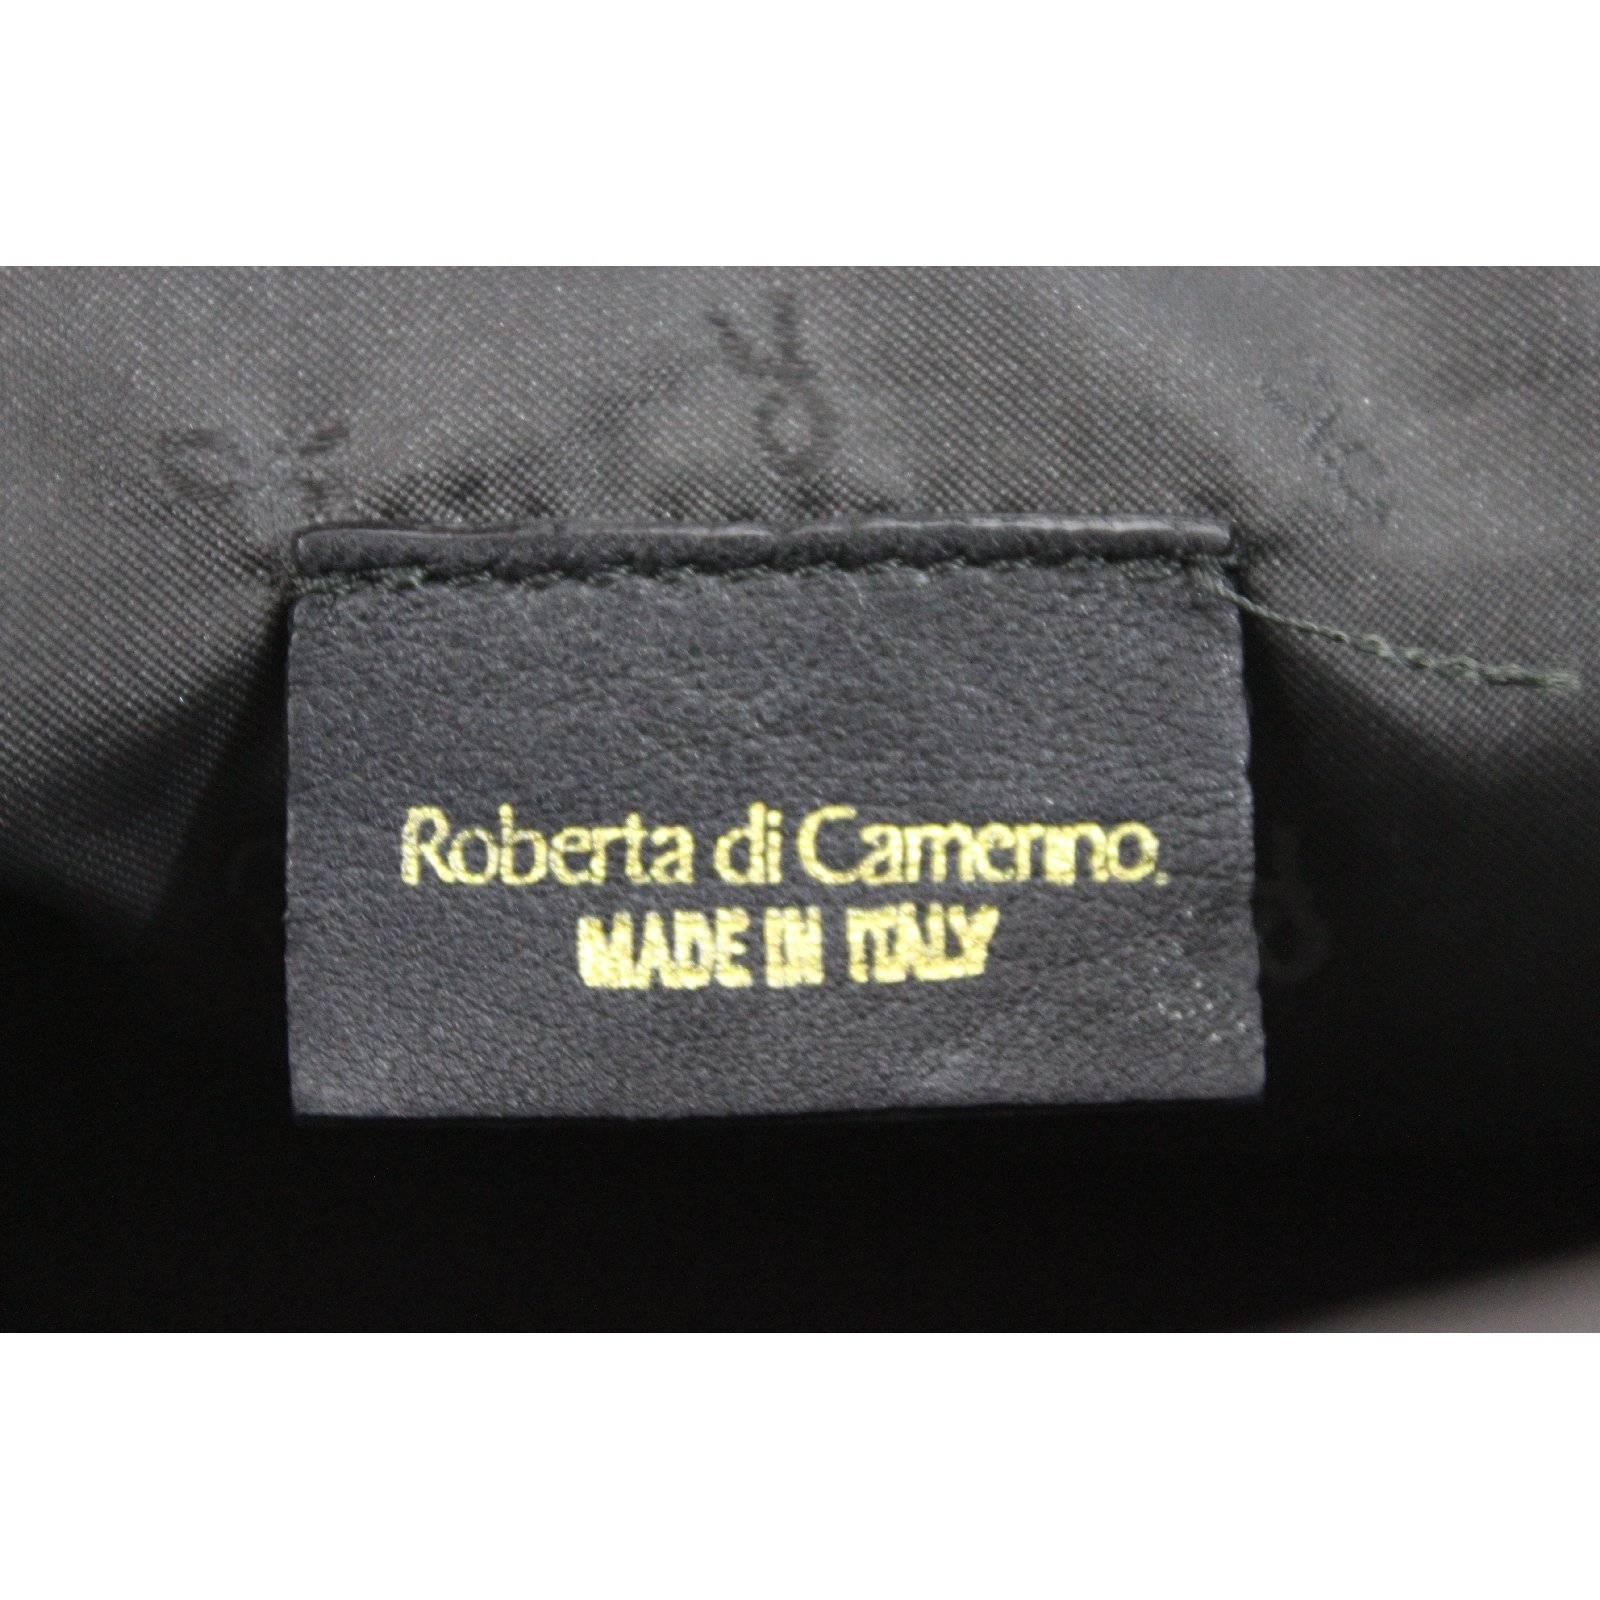 Roberta di Camerino black cotton pochette handbag 1980s italy vintage clutche For Sale 1